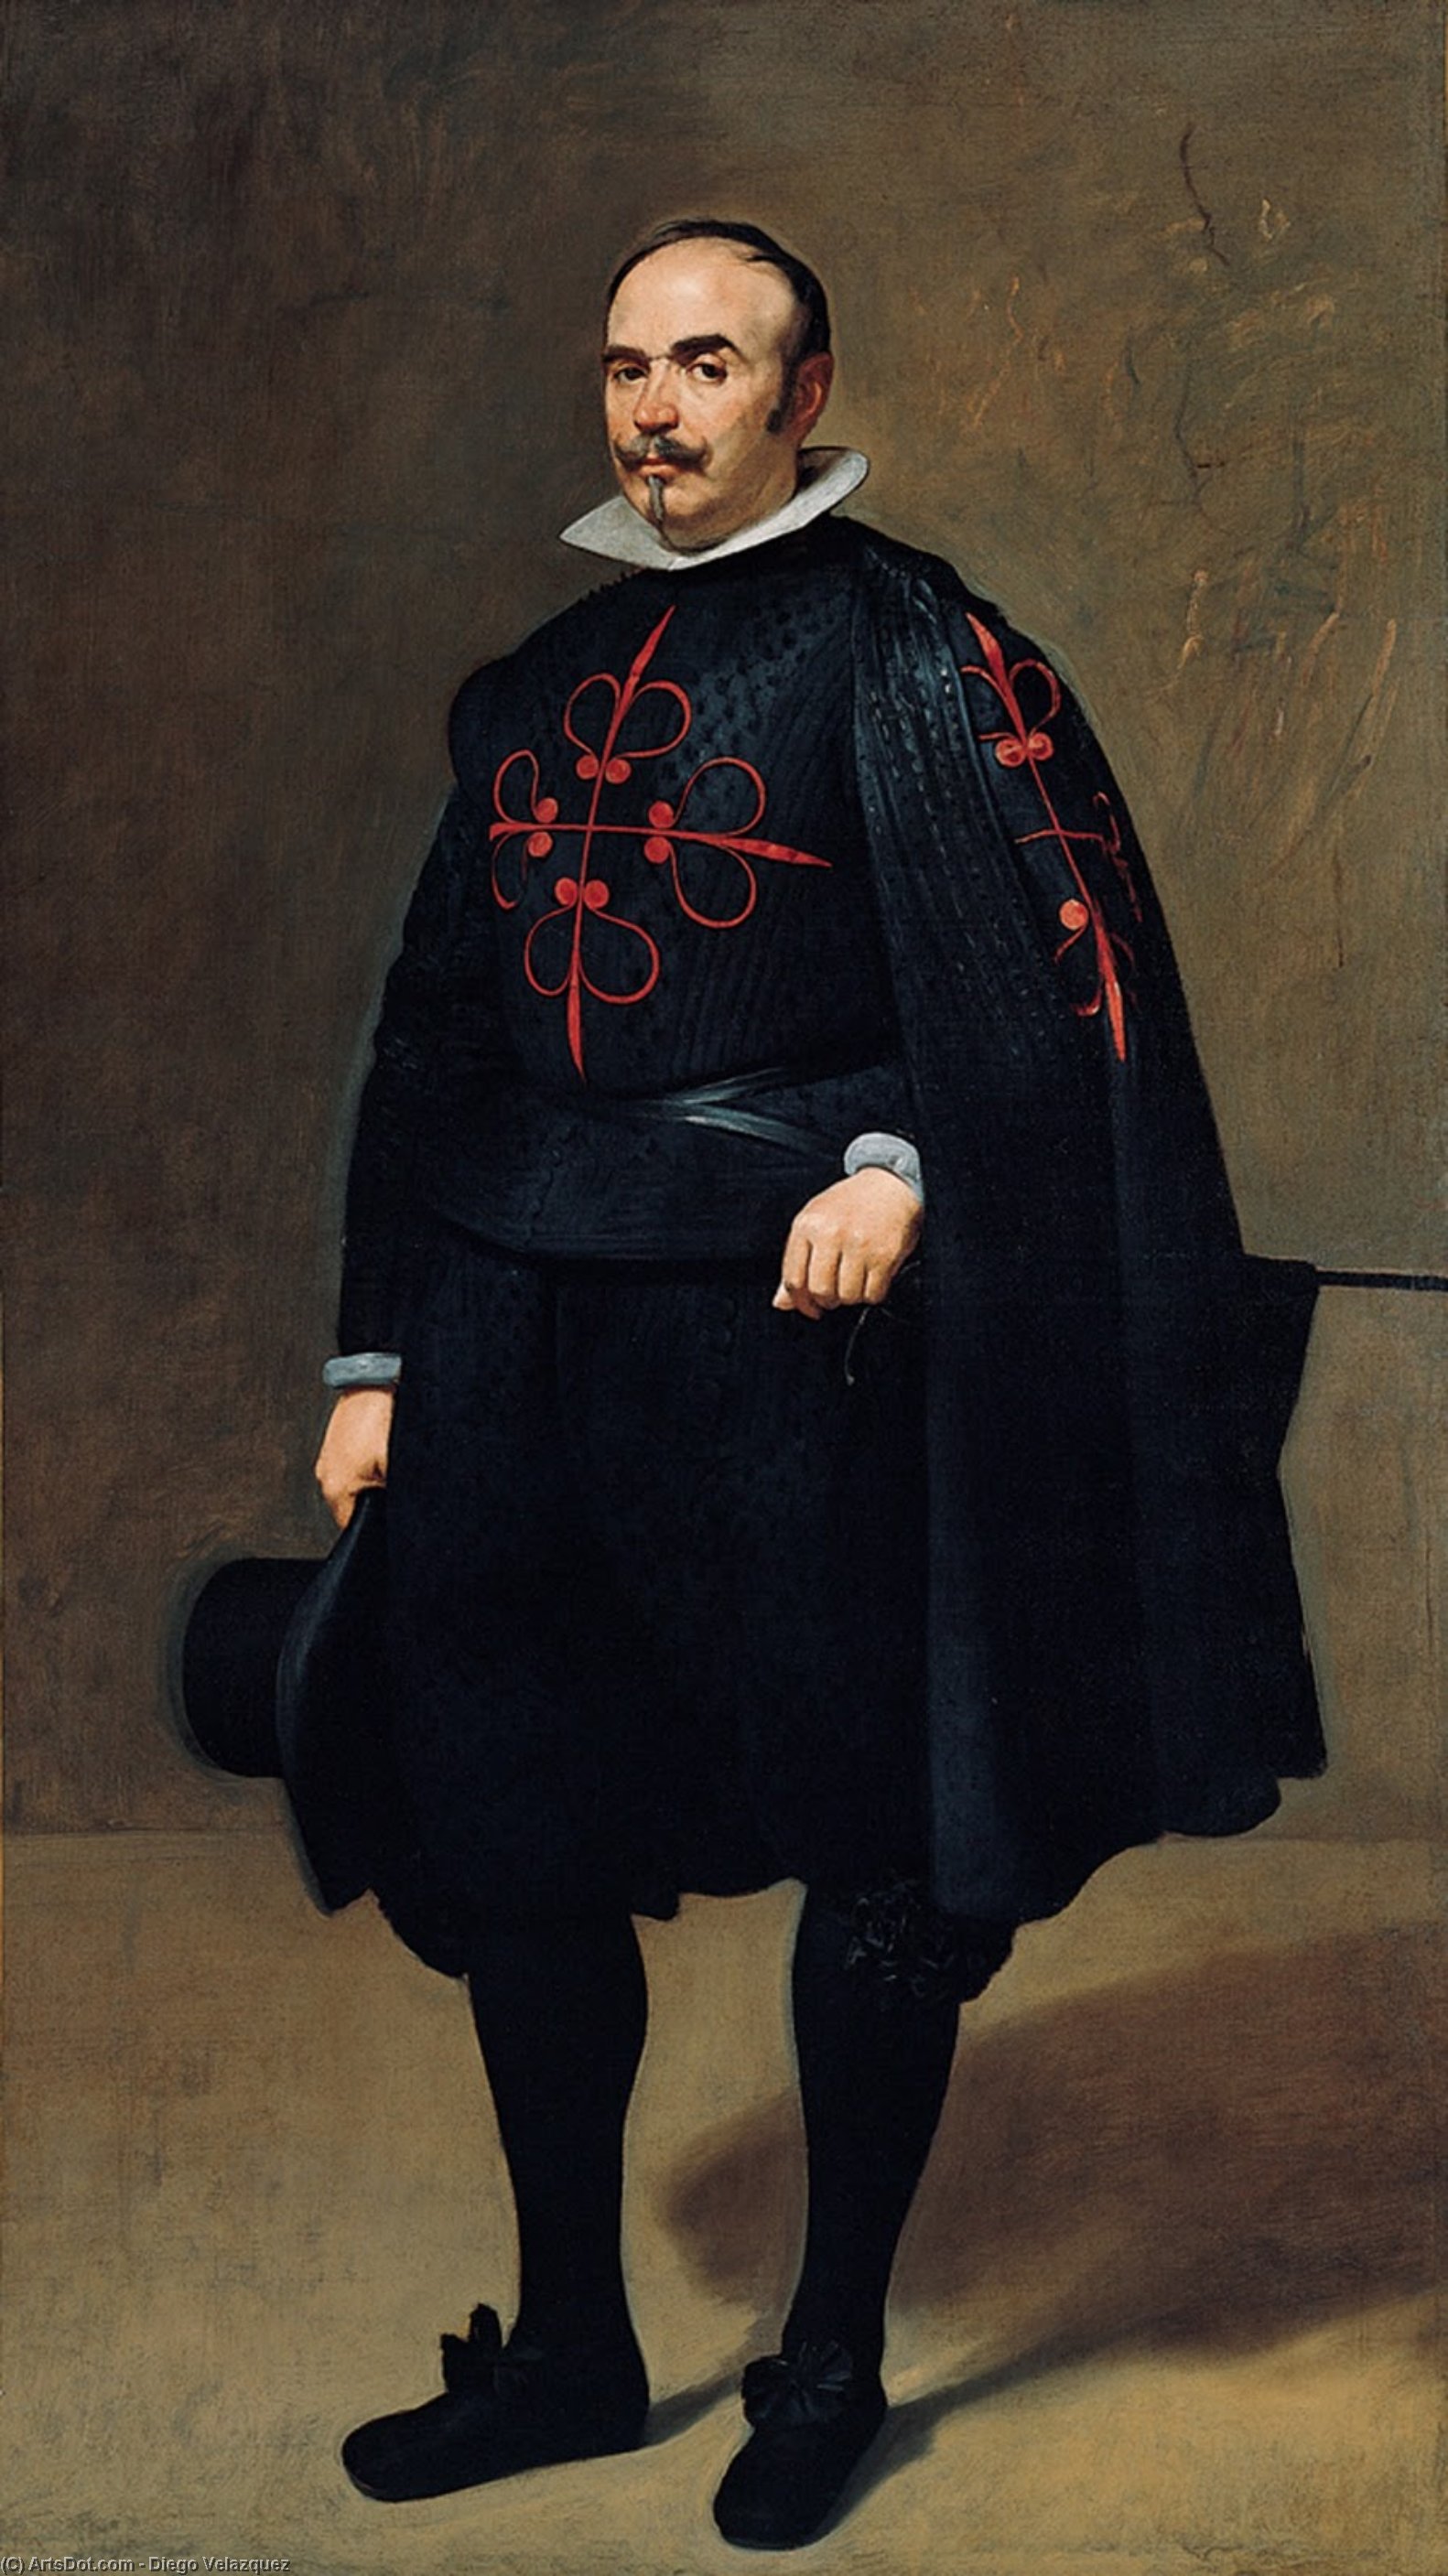 WikiOO.org - Encyclopedia of Fine Arts - Festés, Grafika Diego Velazquez - Portrait of Pedro de Barberana y Aparregui